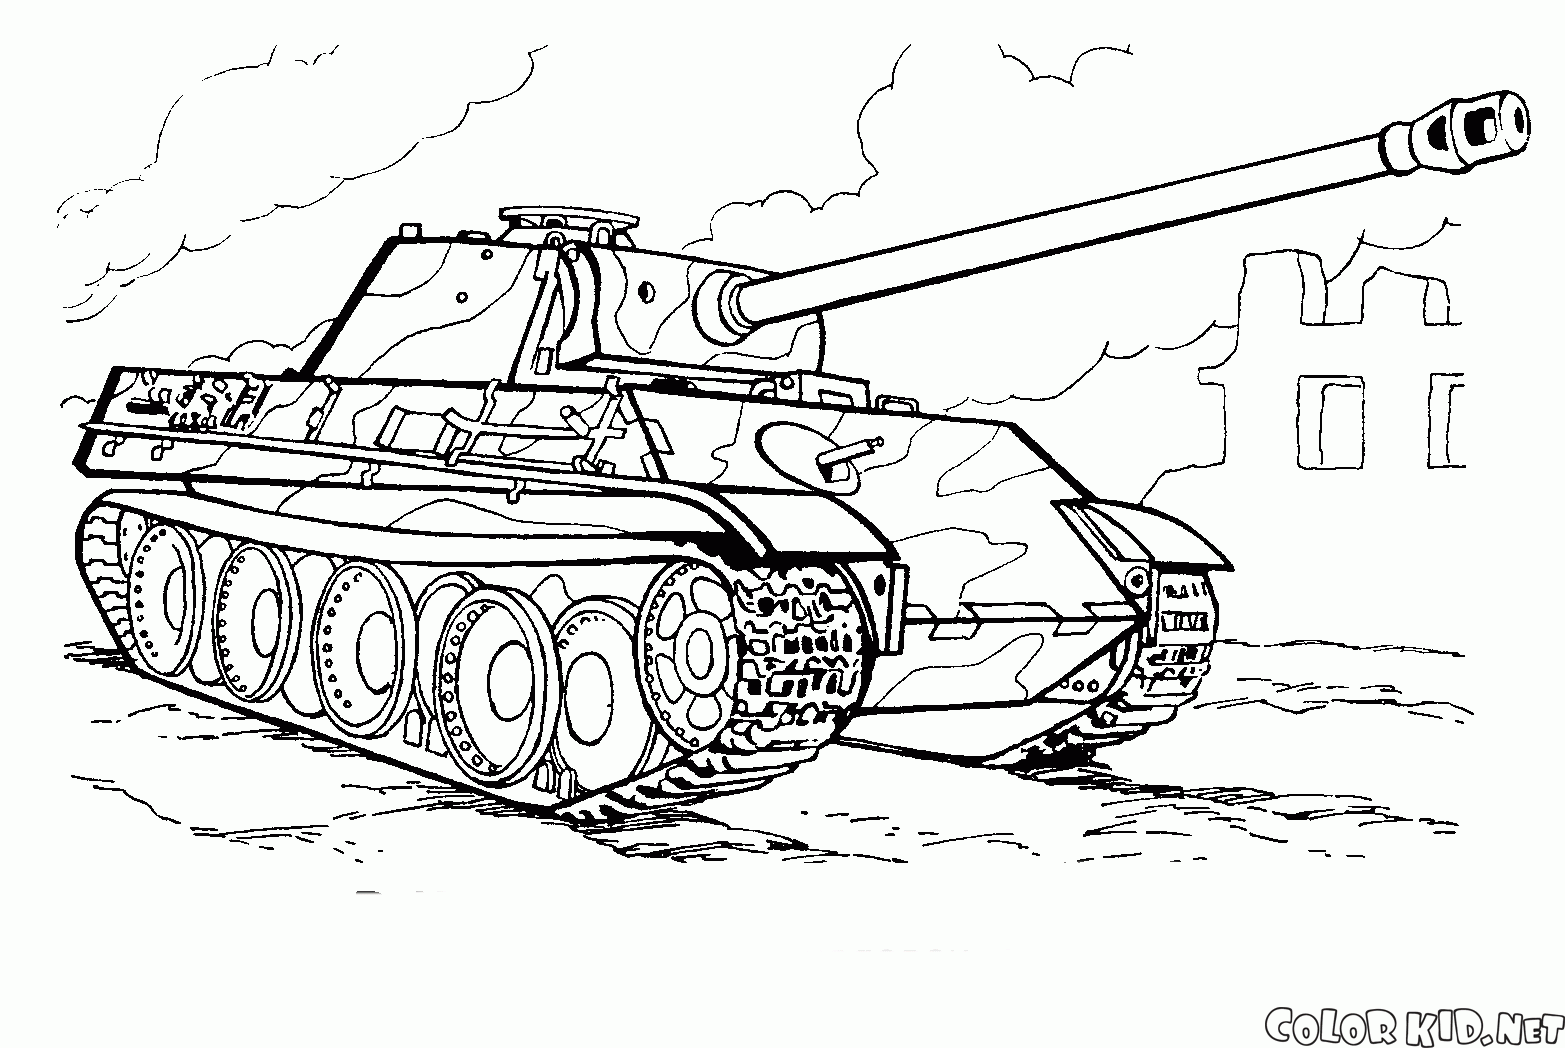 德國的現代坦克